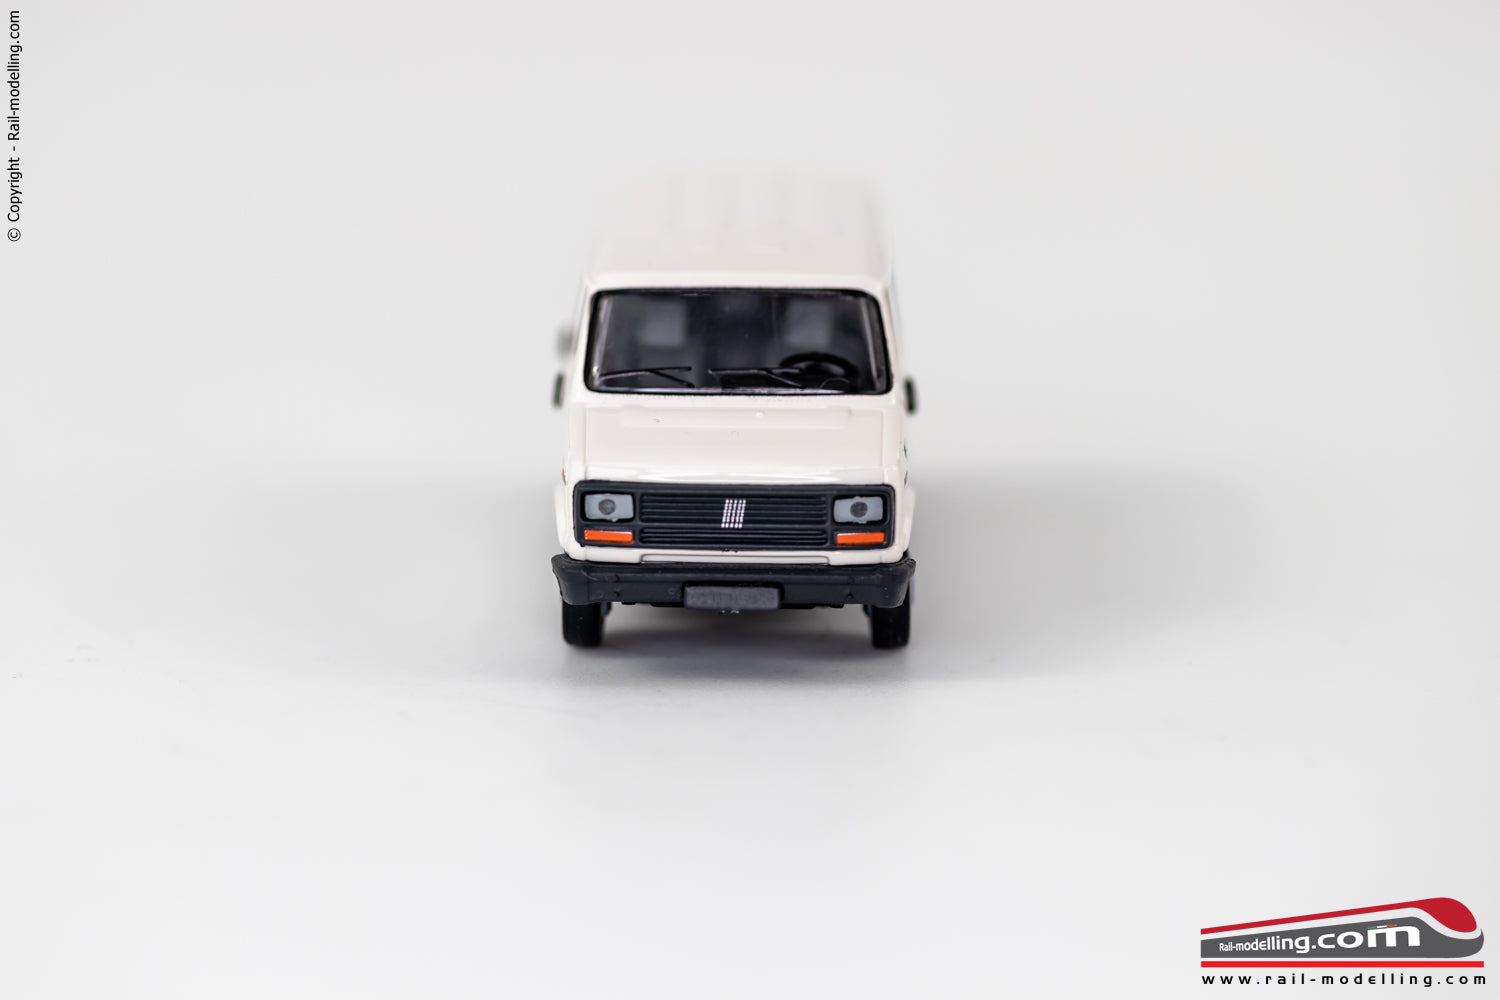 BREKINA 34900 - H0 1:87 - Auto modellino Fiat Ducato 1982 bianco